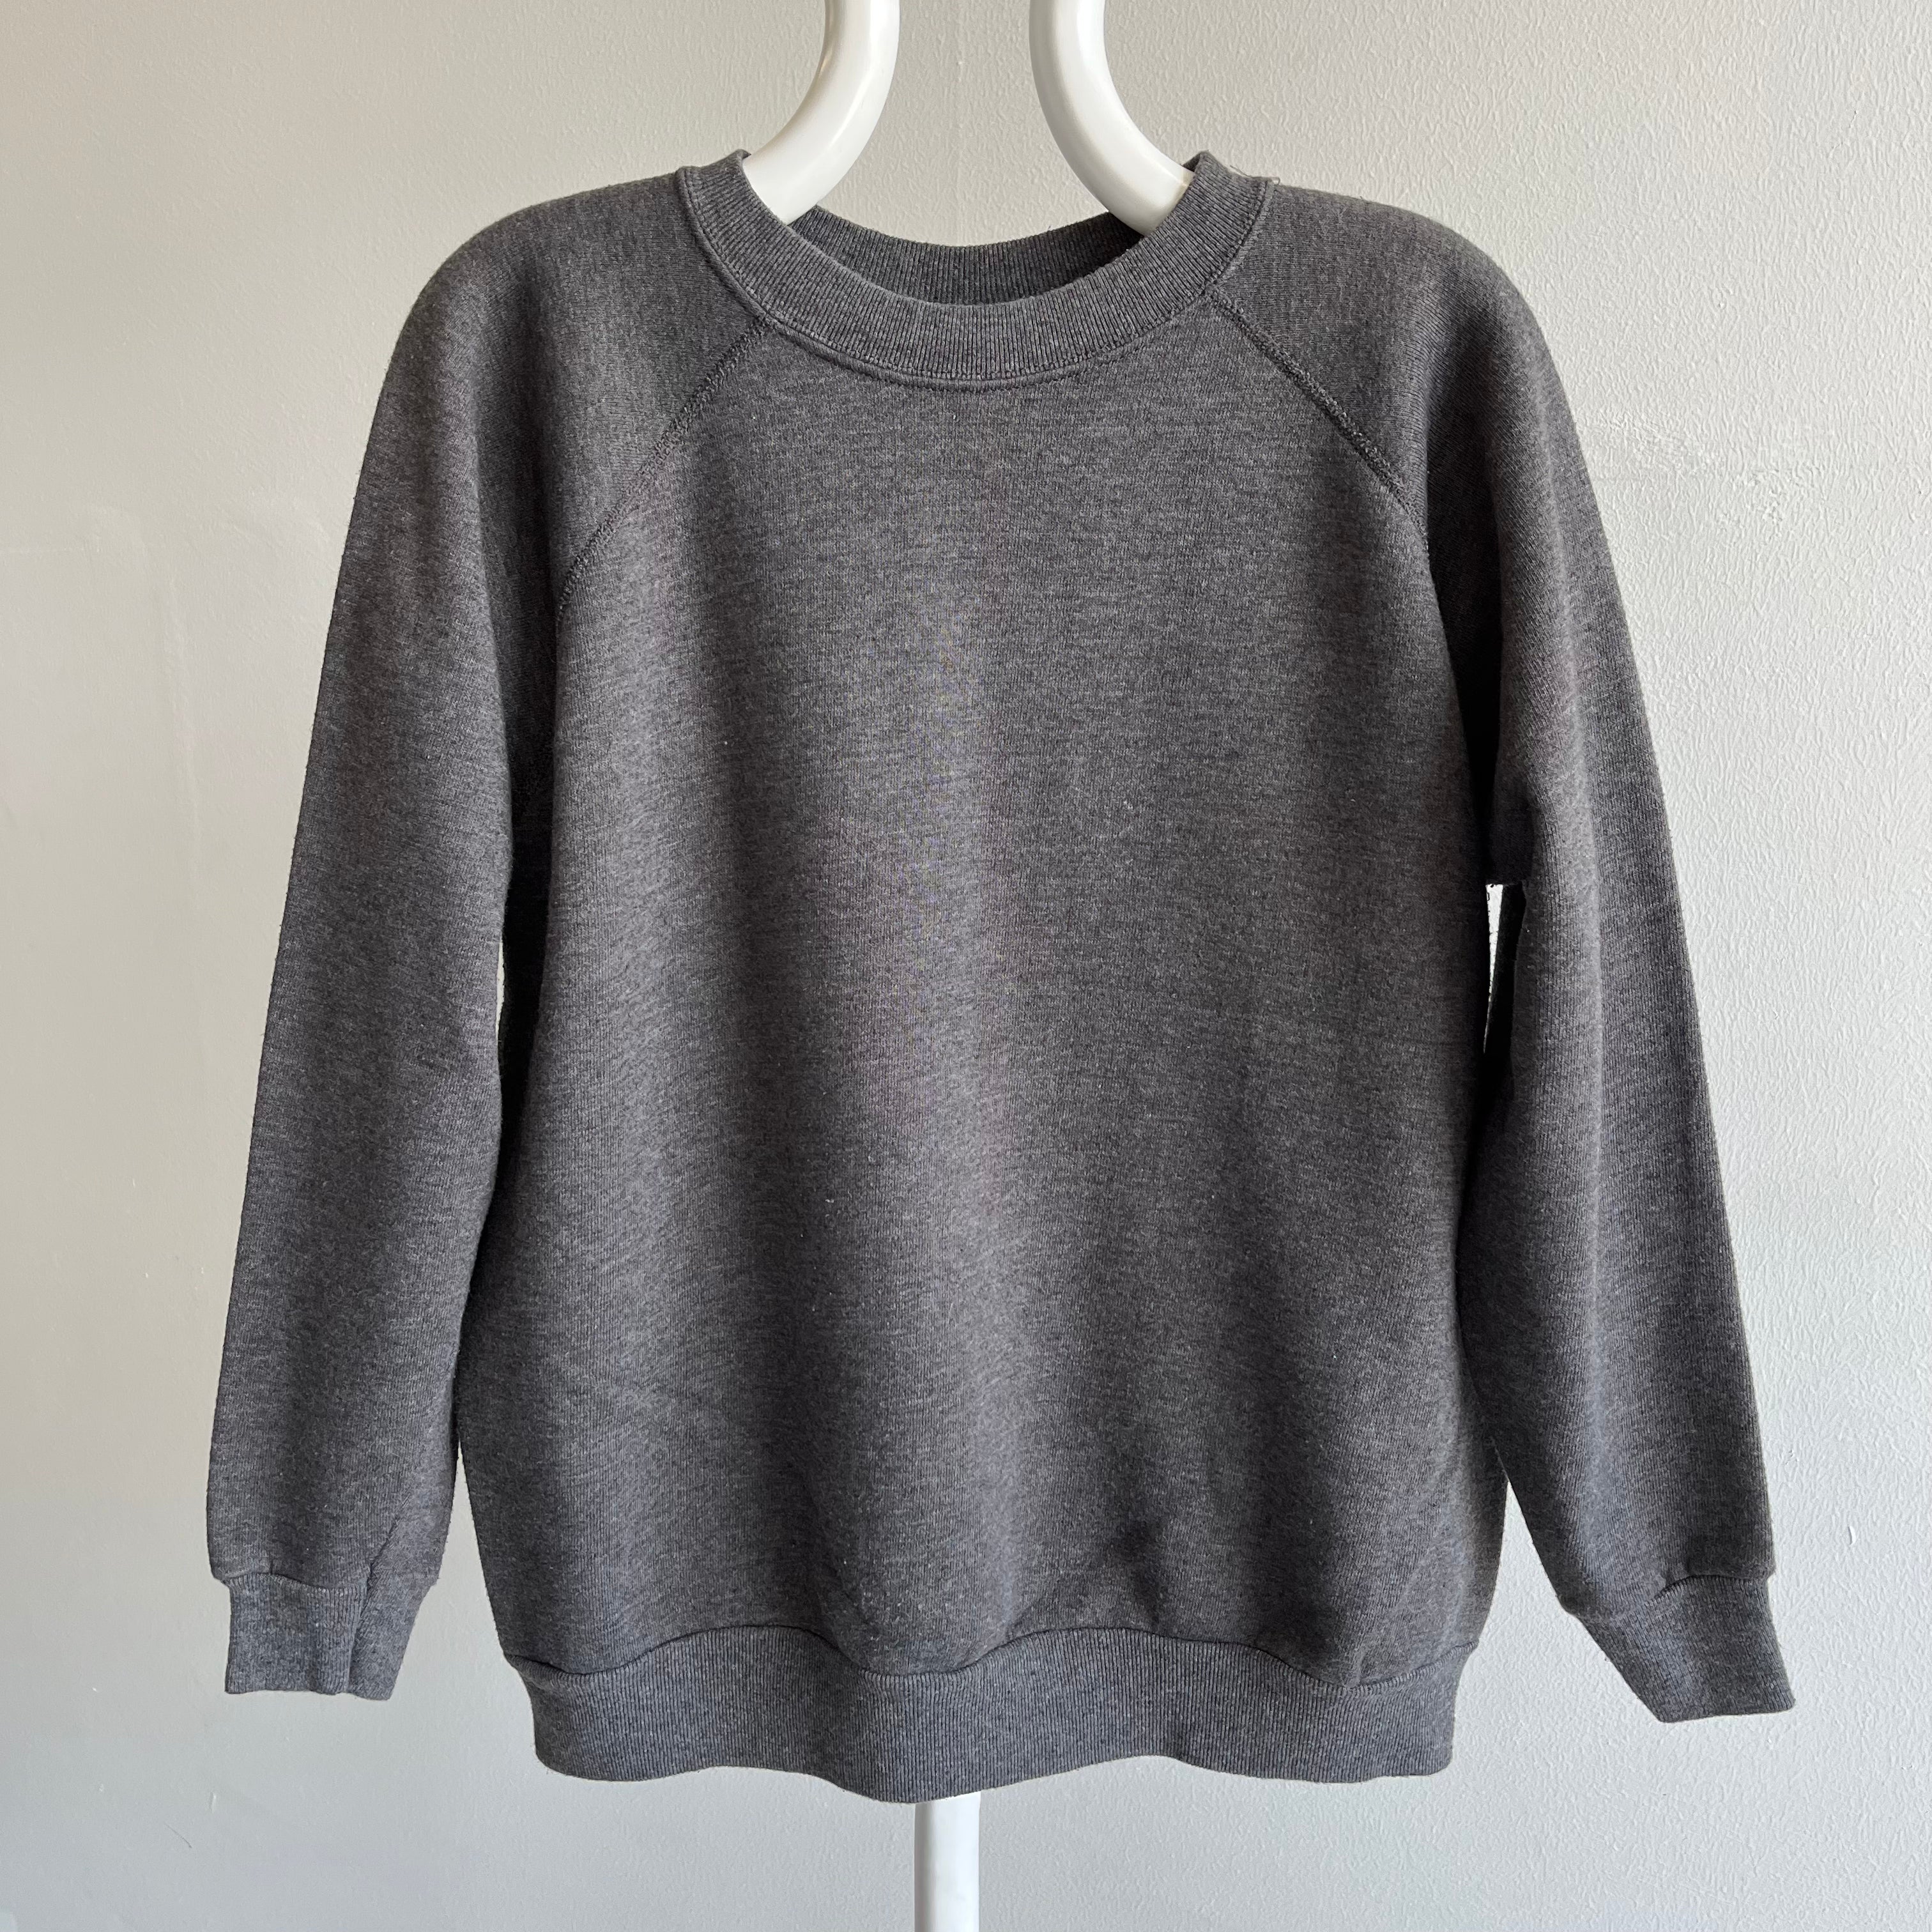 1980s Deep Gray Blank Sweatshirt - So Good!